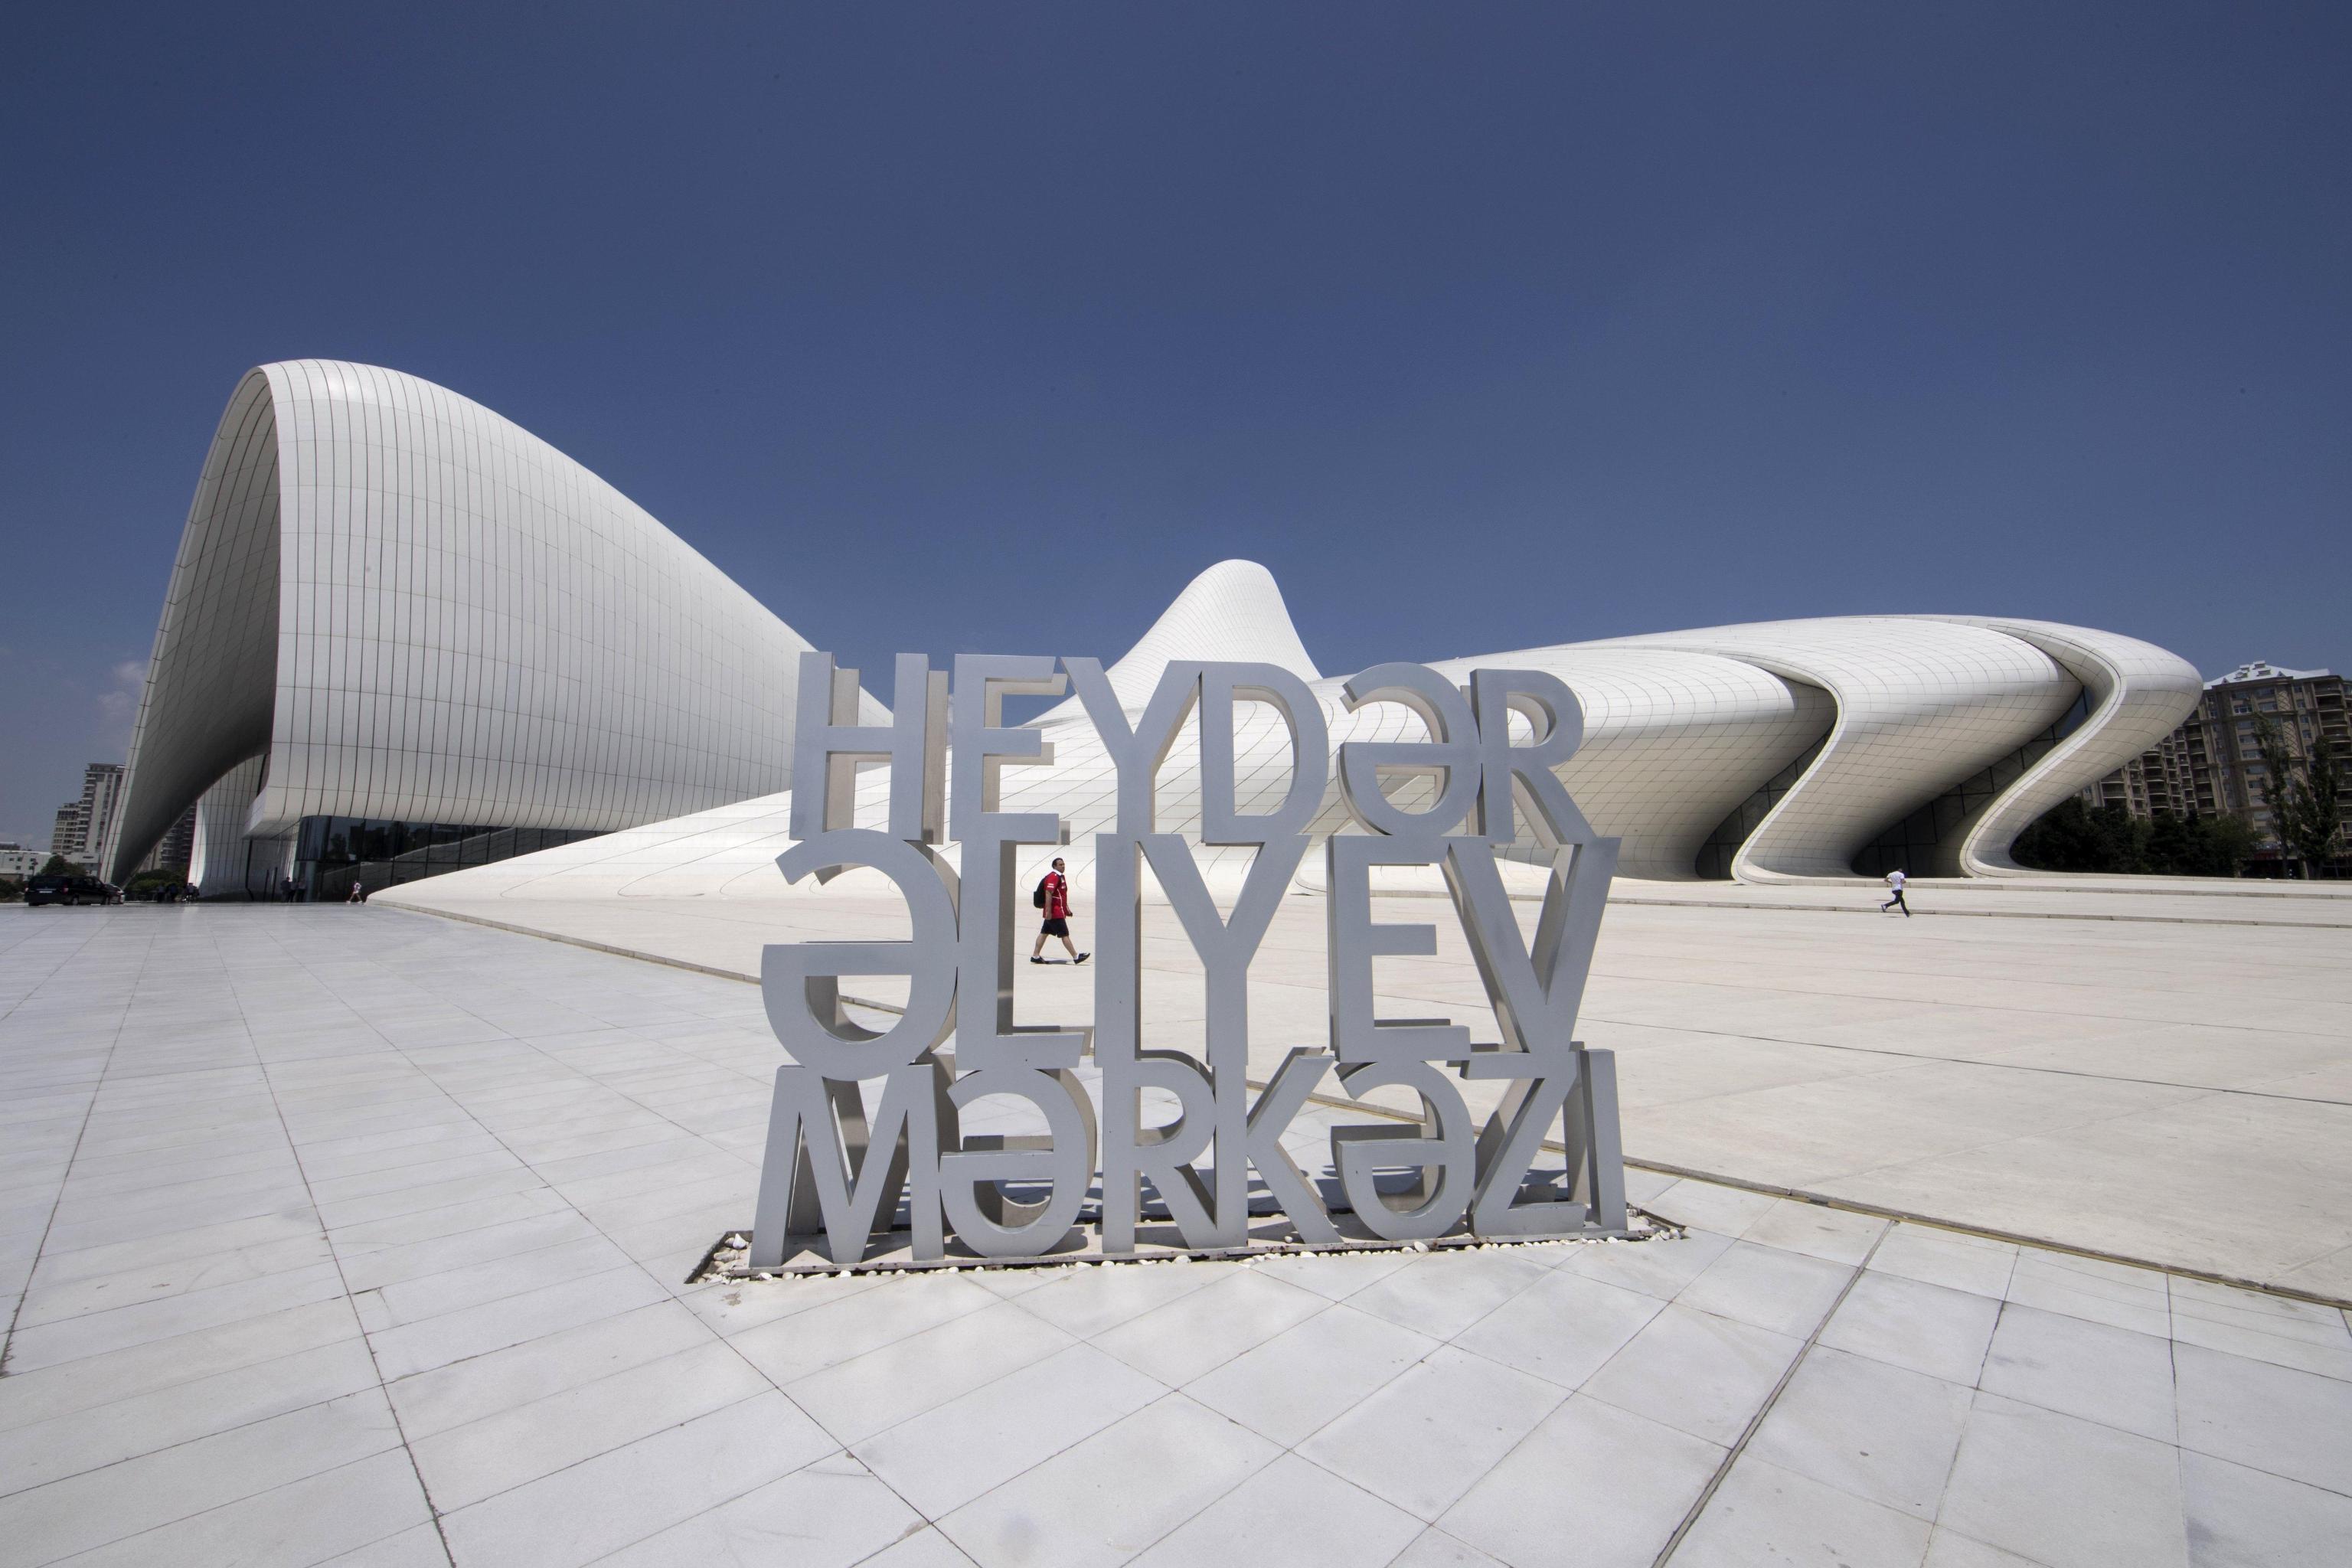 Heydar Aliev Cultural Centre in Baku